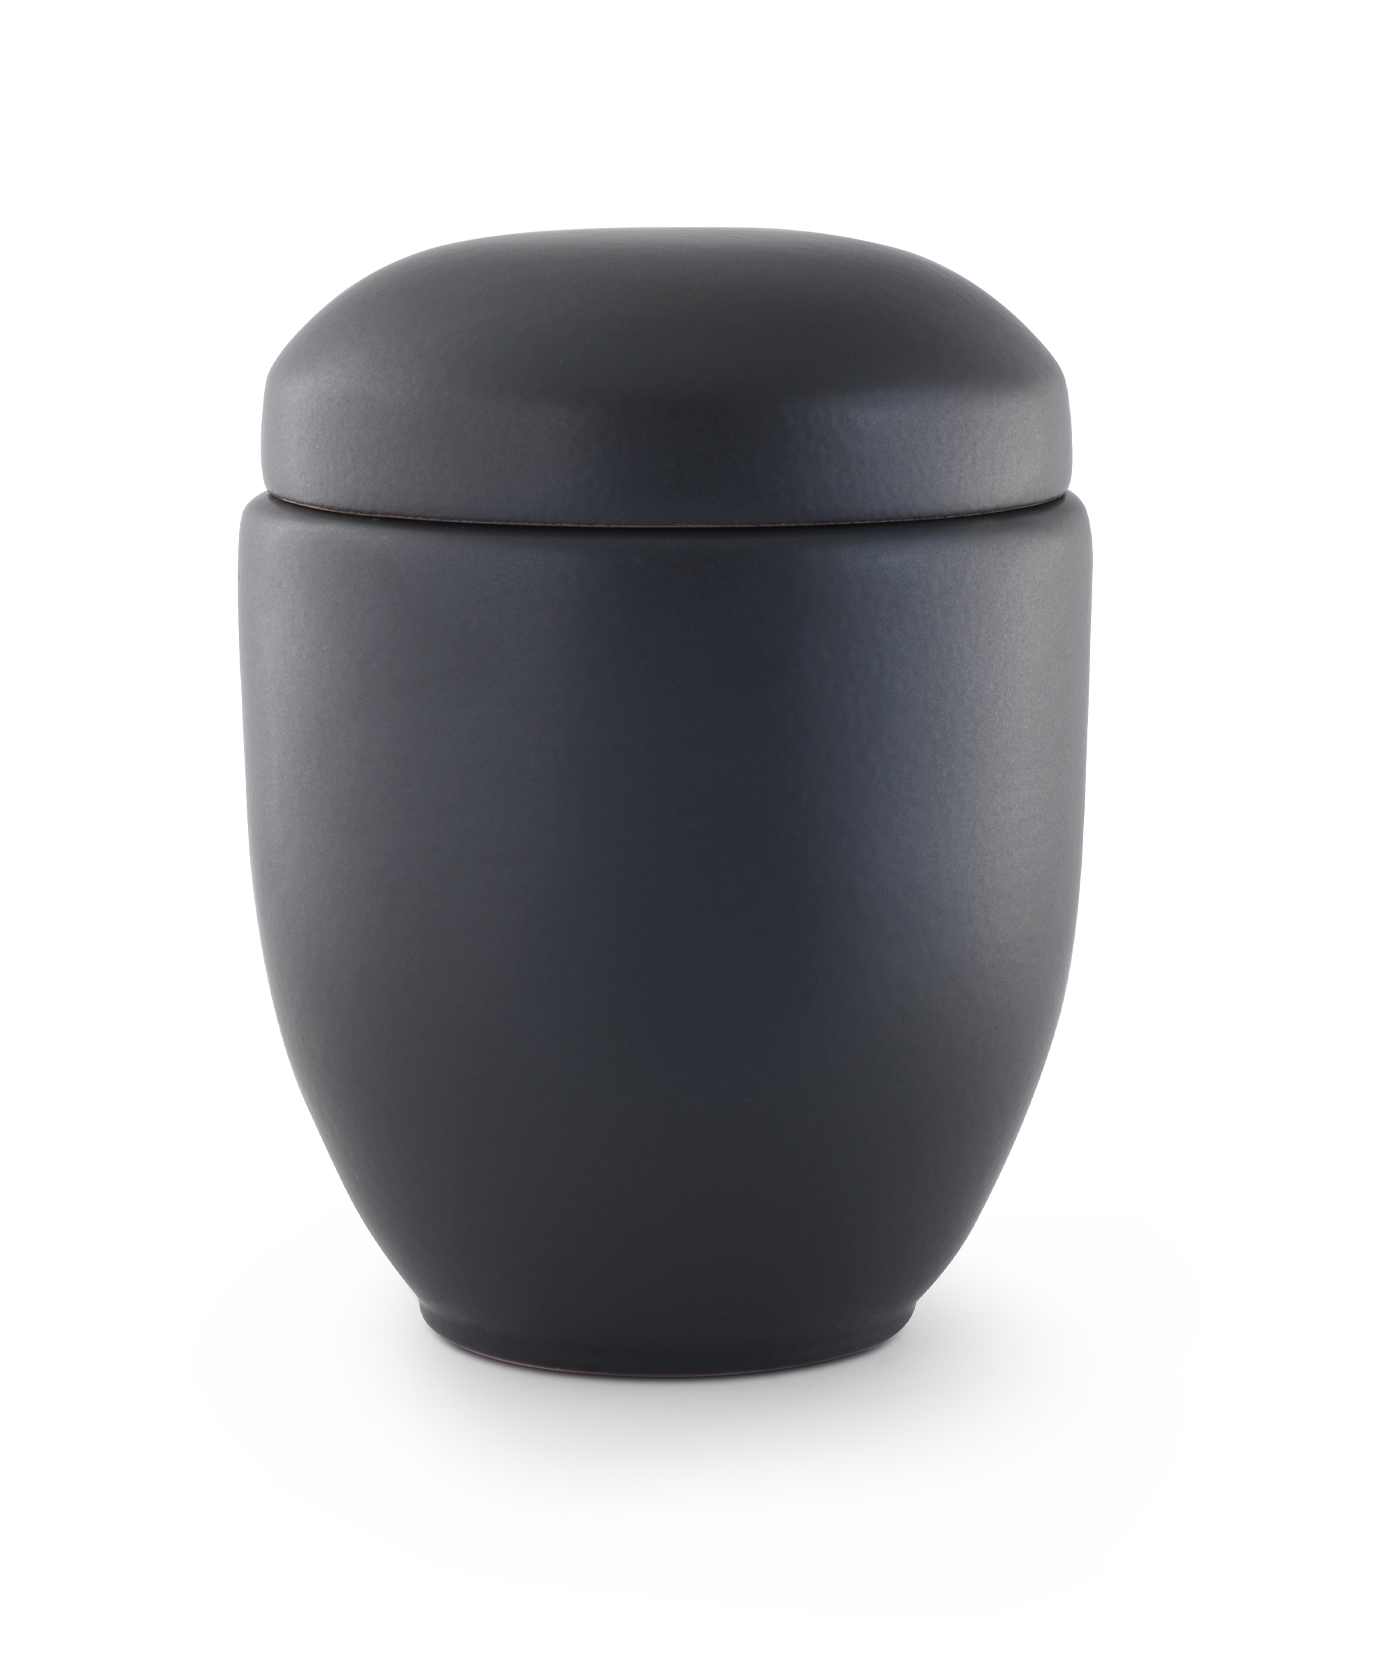 Völsing urn black matt glazed ceramic